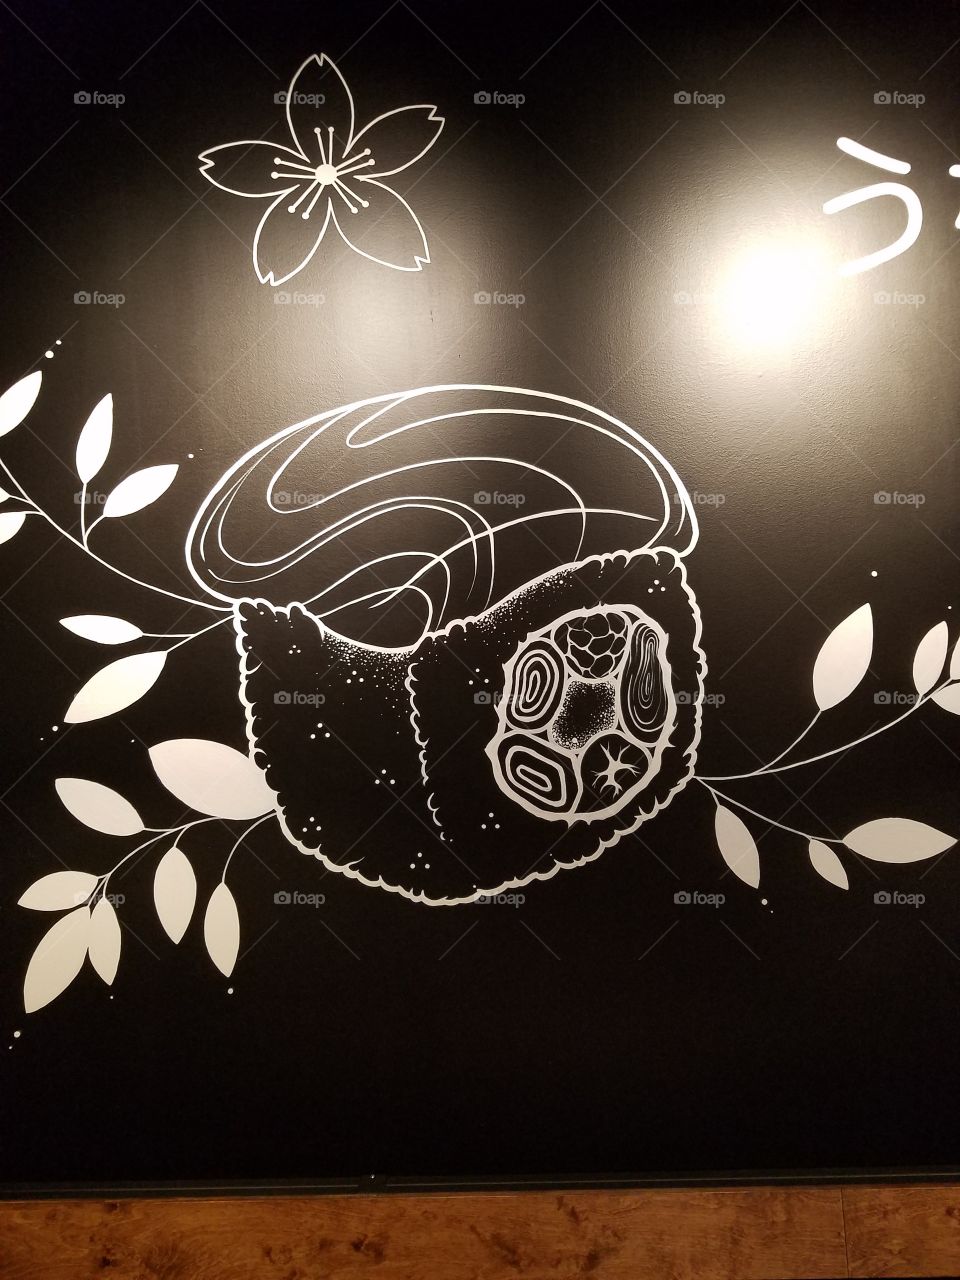 Wall Art at Iron Fish Sushi